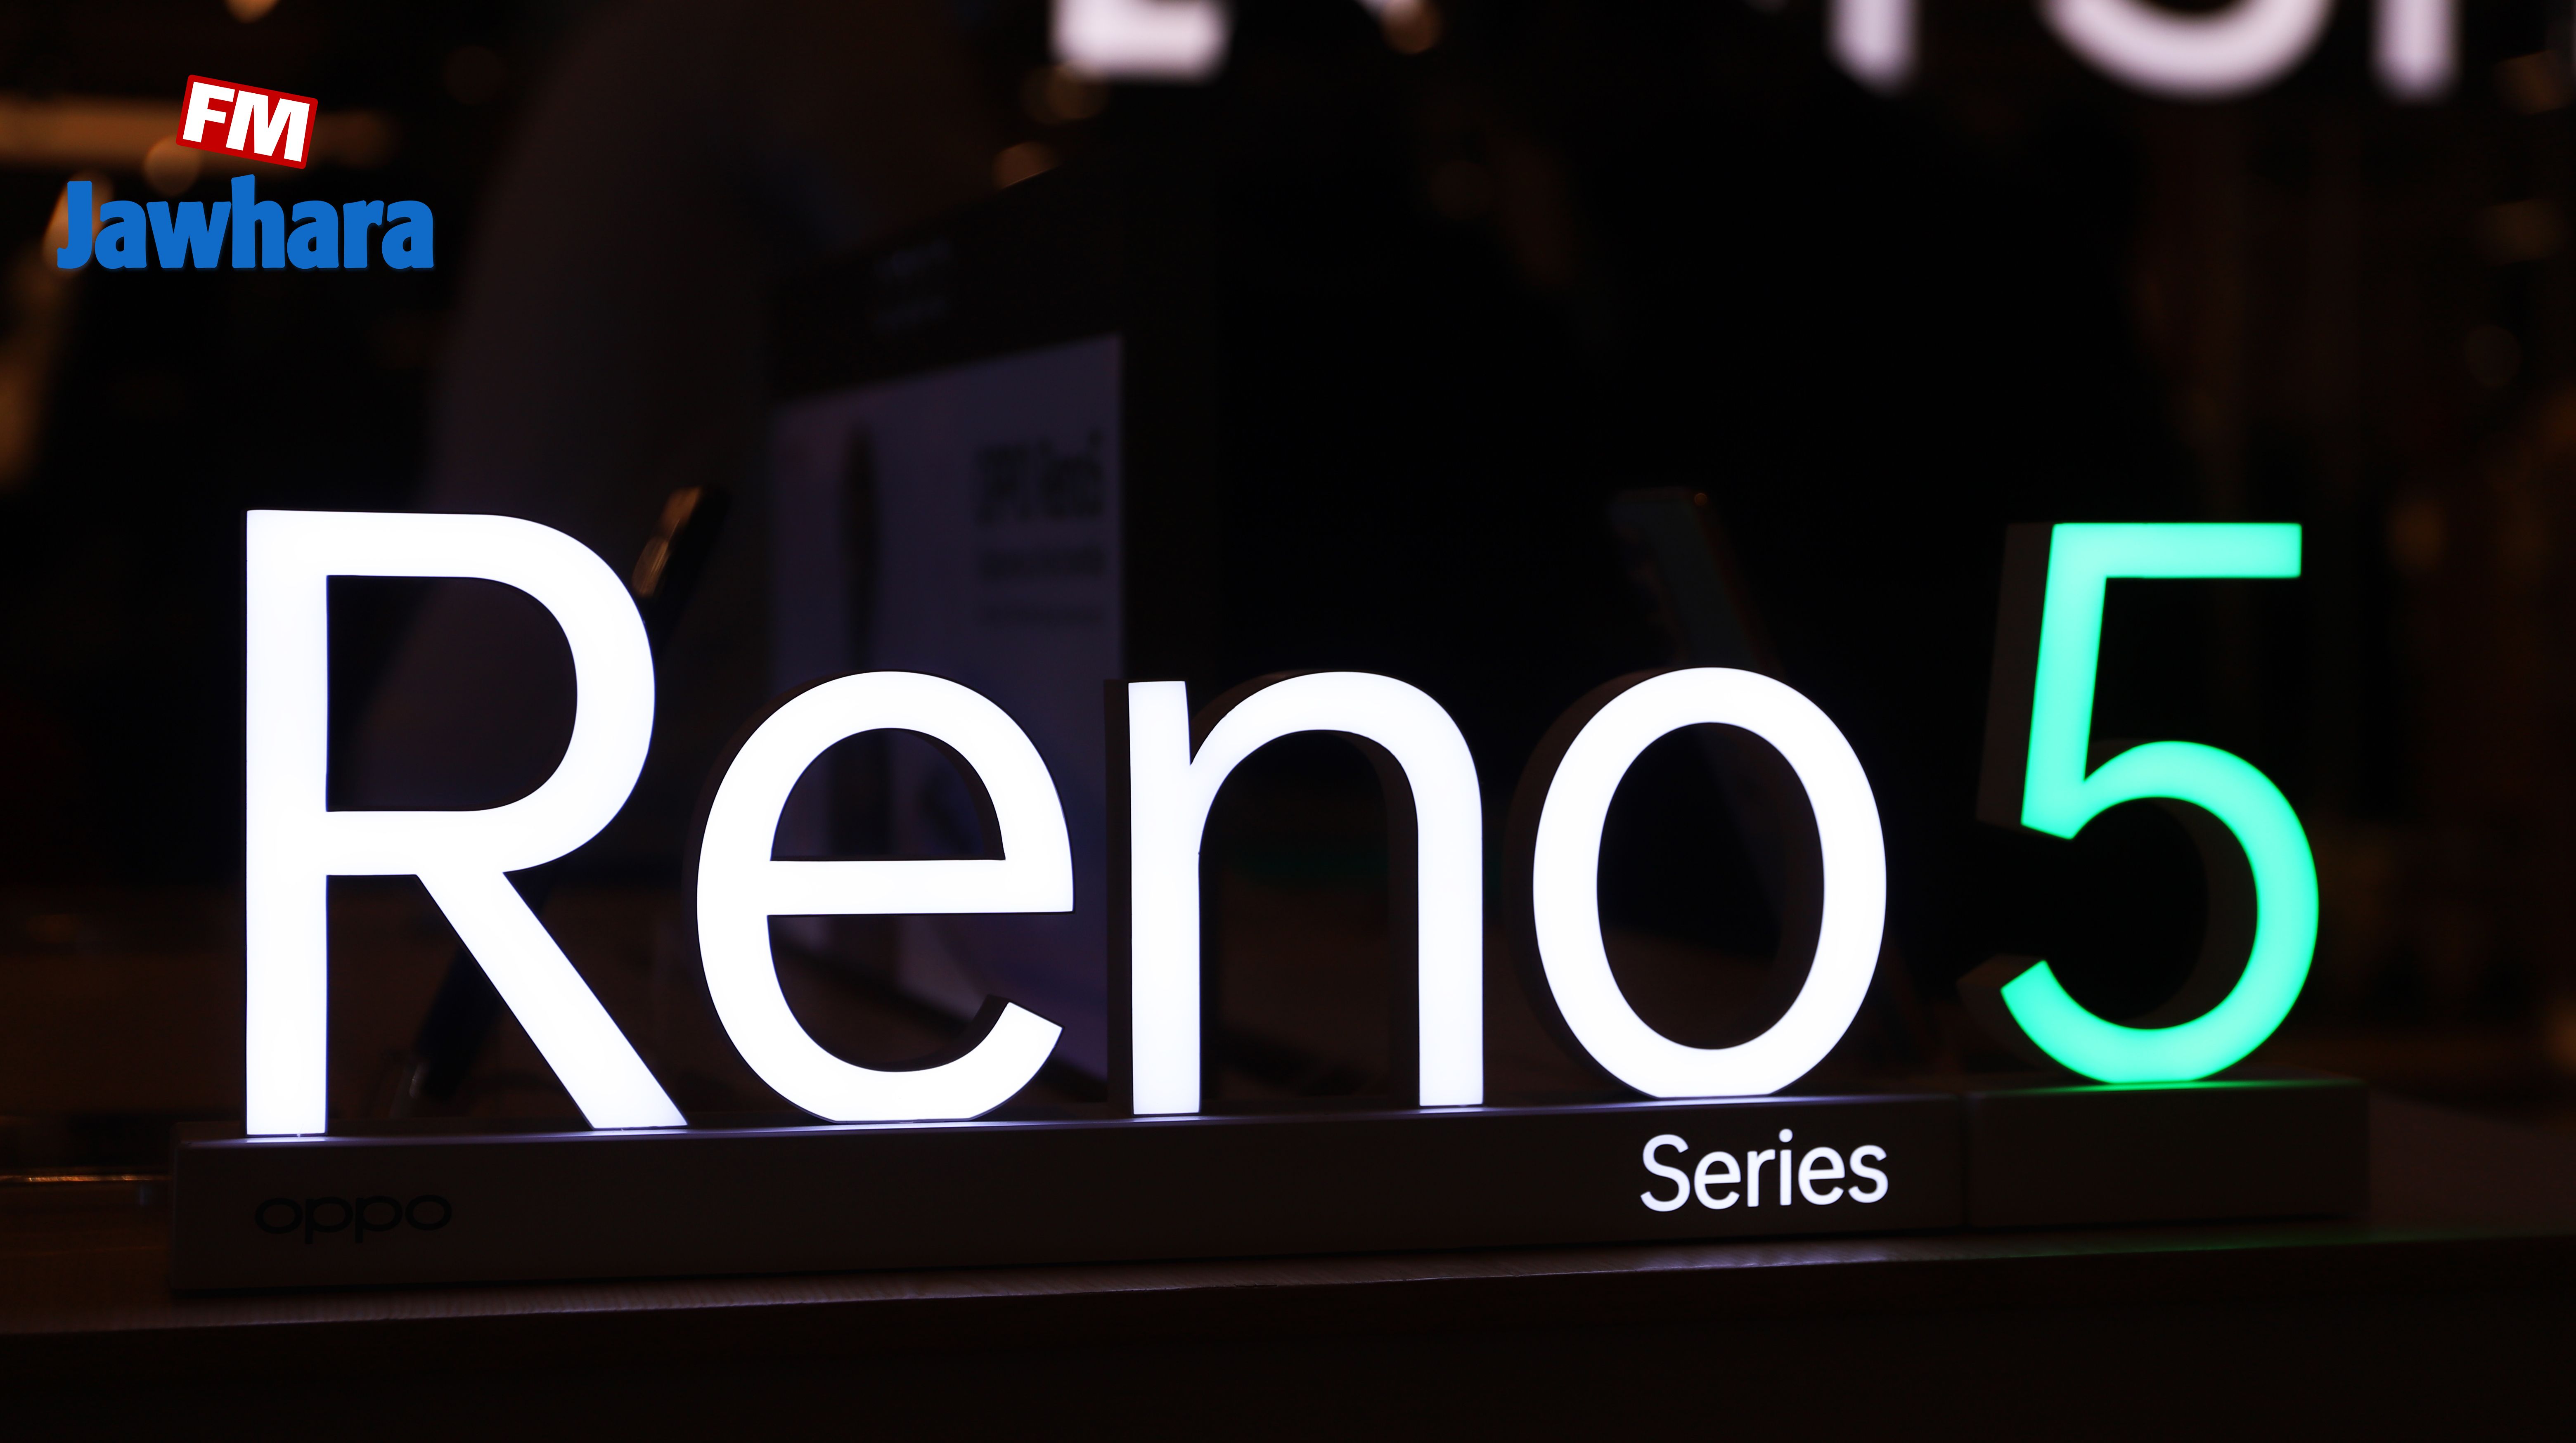 أوبو تكشف عن هاتفها الجديد رينو 5 في فضاء Mall of Sousse